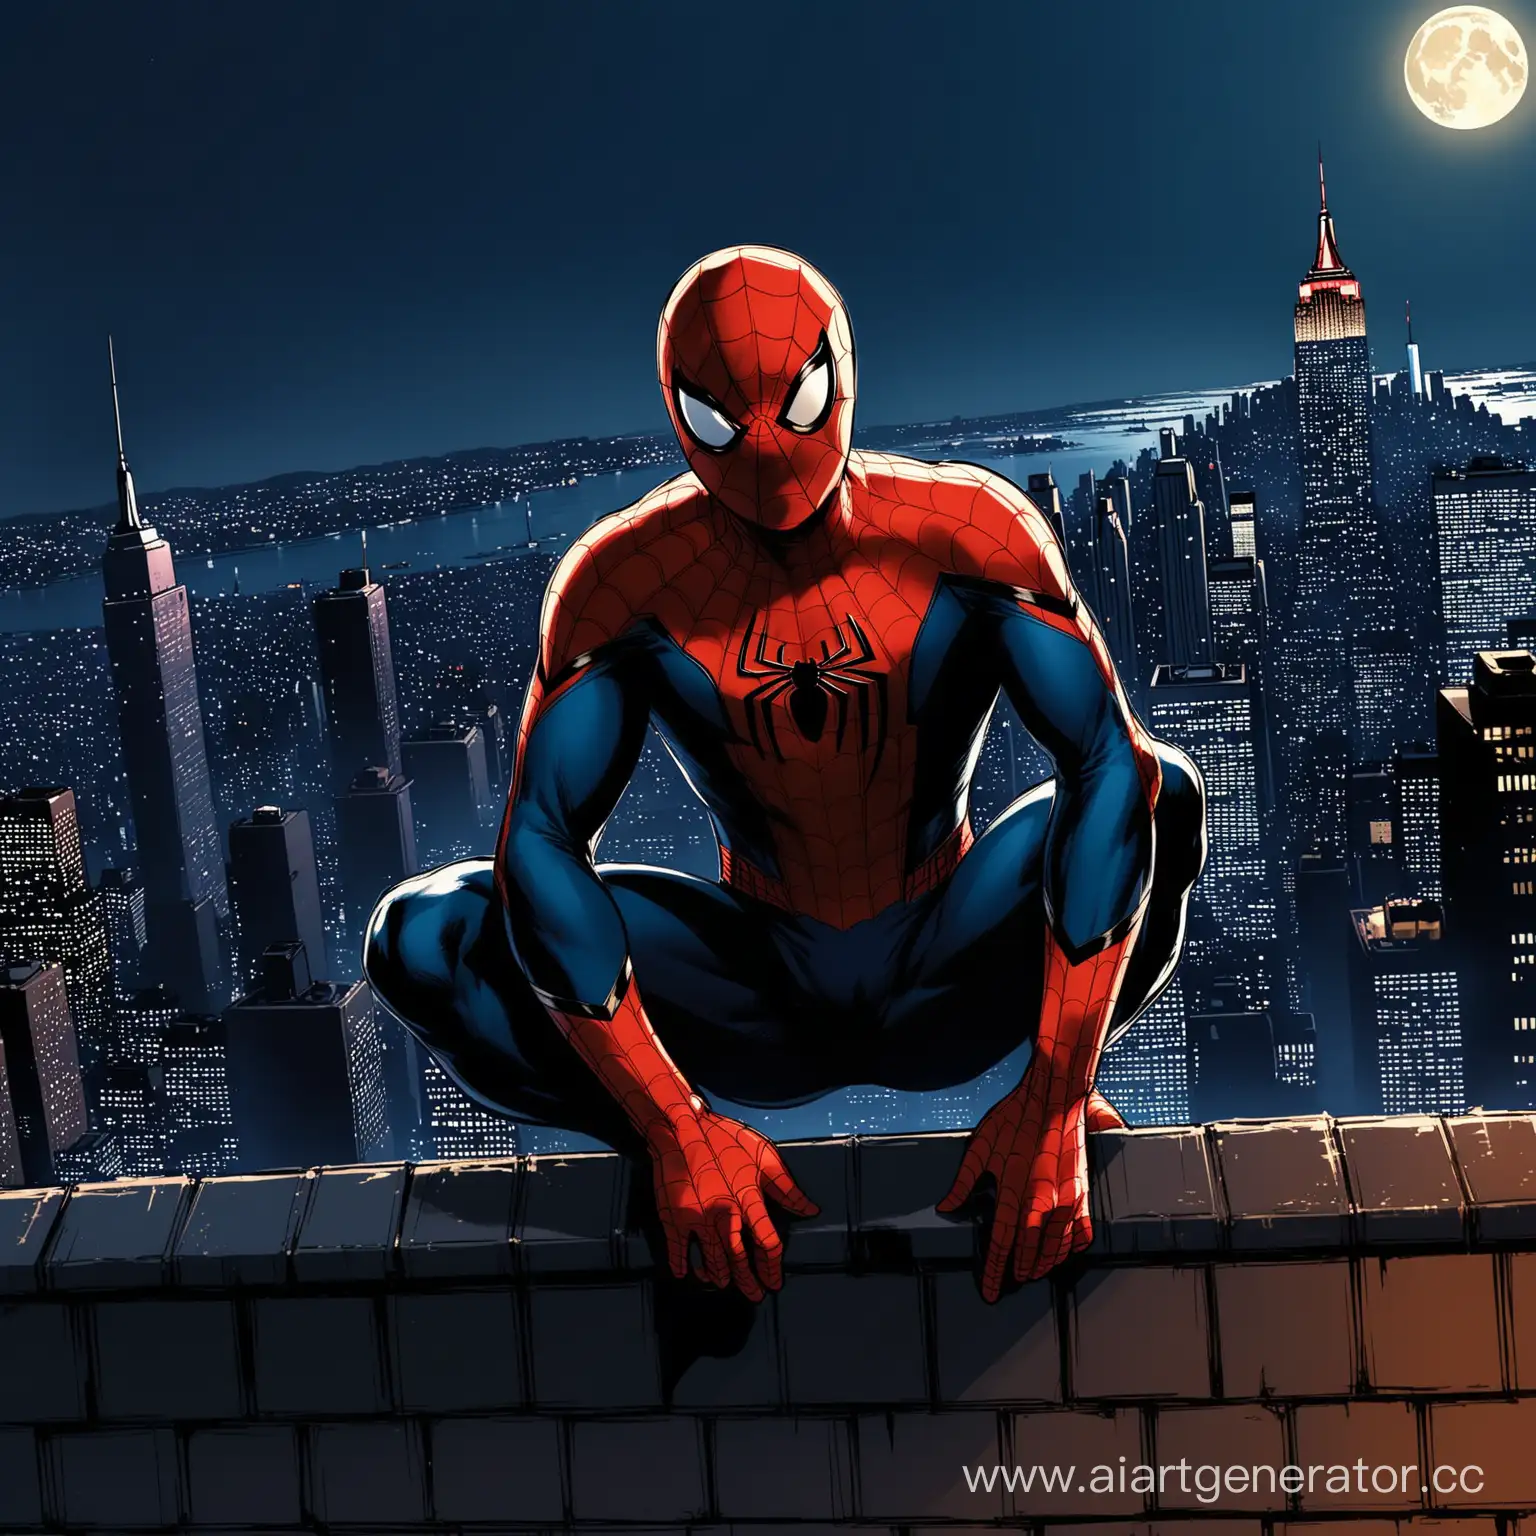 На крыше высотного здания в Нью-Йорке в полночь, человек-паук, известный героем и защитником города, Питер Паркер, ожидал очередной боя с преступниками. Желая немного расслабиться, он решает пробраться в темный антураж всемирной паутины - виртуальный мир. Он уверен, что здесь никто не сможет навредить его и его близким.


На крыше высотного здания в Нью-Йорке в полночь, человек-паук, известный героем и защитником города, Питер Паркер, ожидал очередной боя с преступниками. Желая немного расслабиться, он решает пробраться в темный антураж всемирной паутины - виртуальный мир. Он уверен, что здесь никто не сможет навредить его и его близким.




